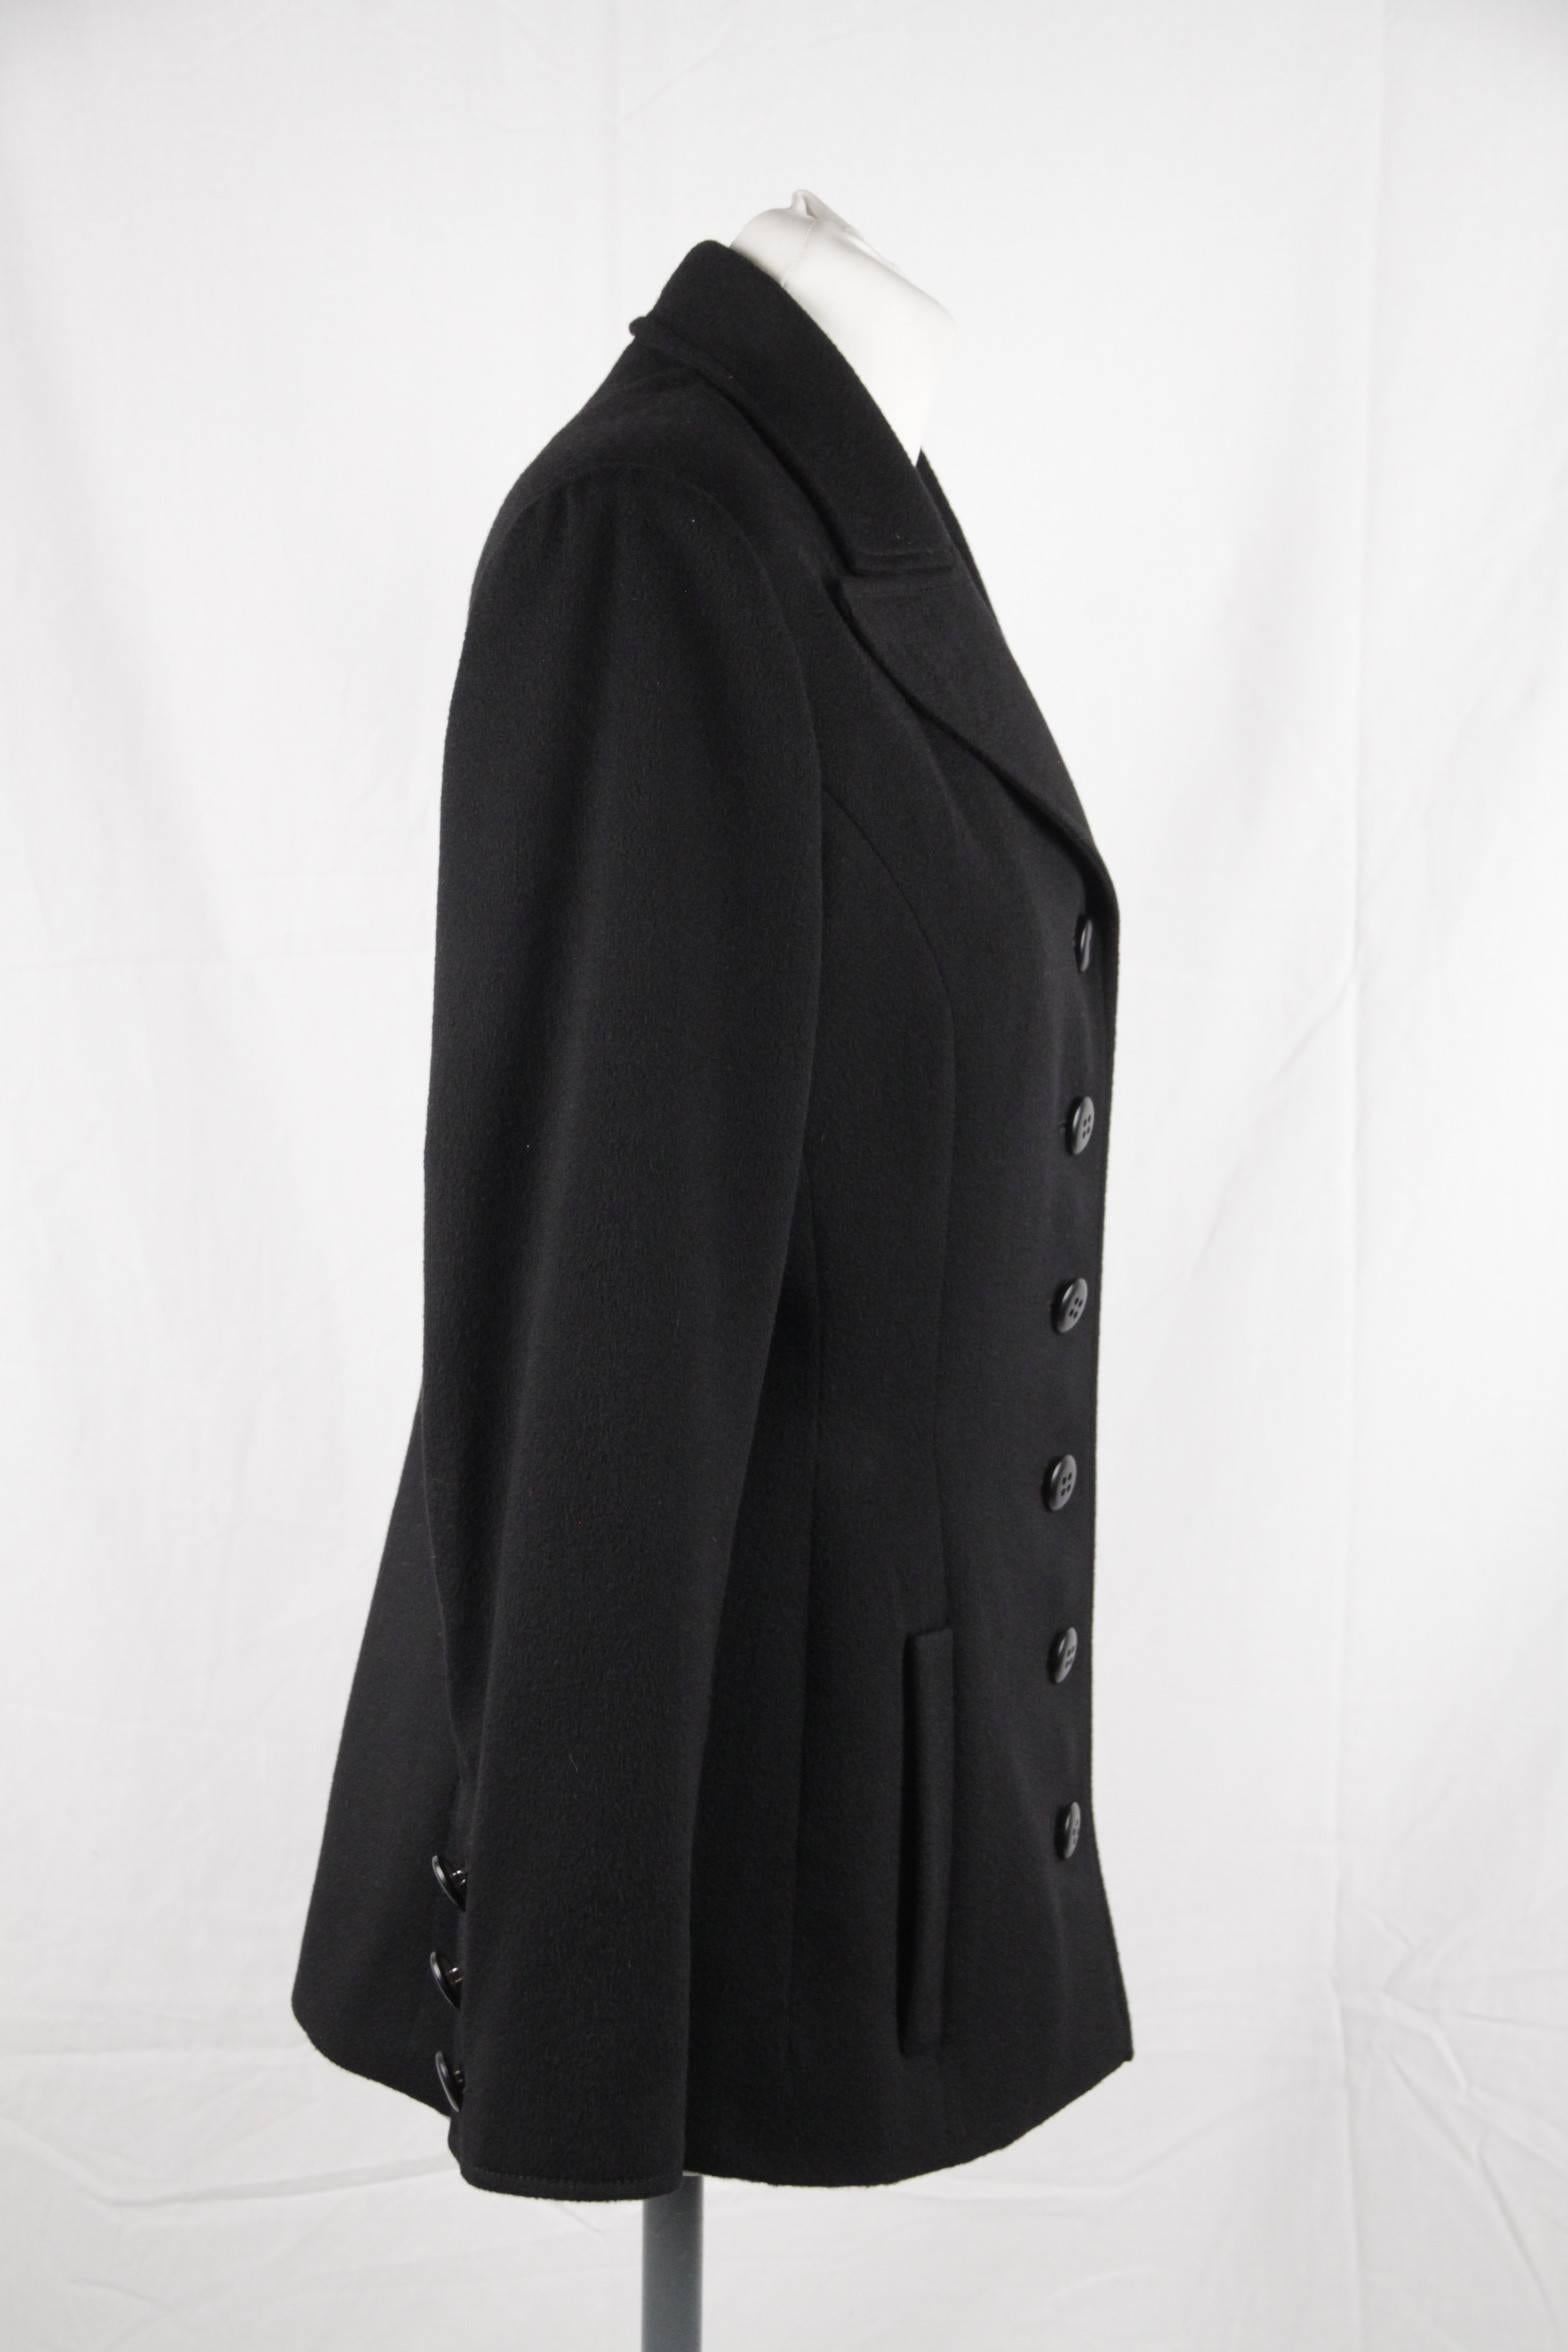 Women's VALENTINO BOUTIQUE Vintage Black Wool BLAZER Jacket SIZE 6 GT